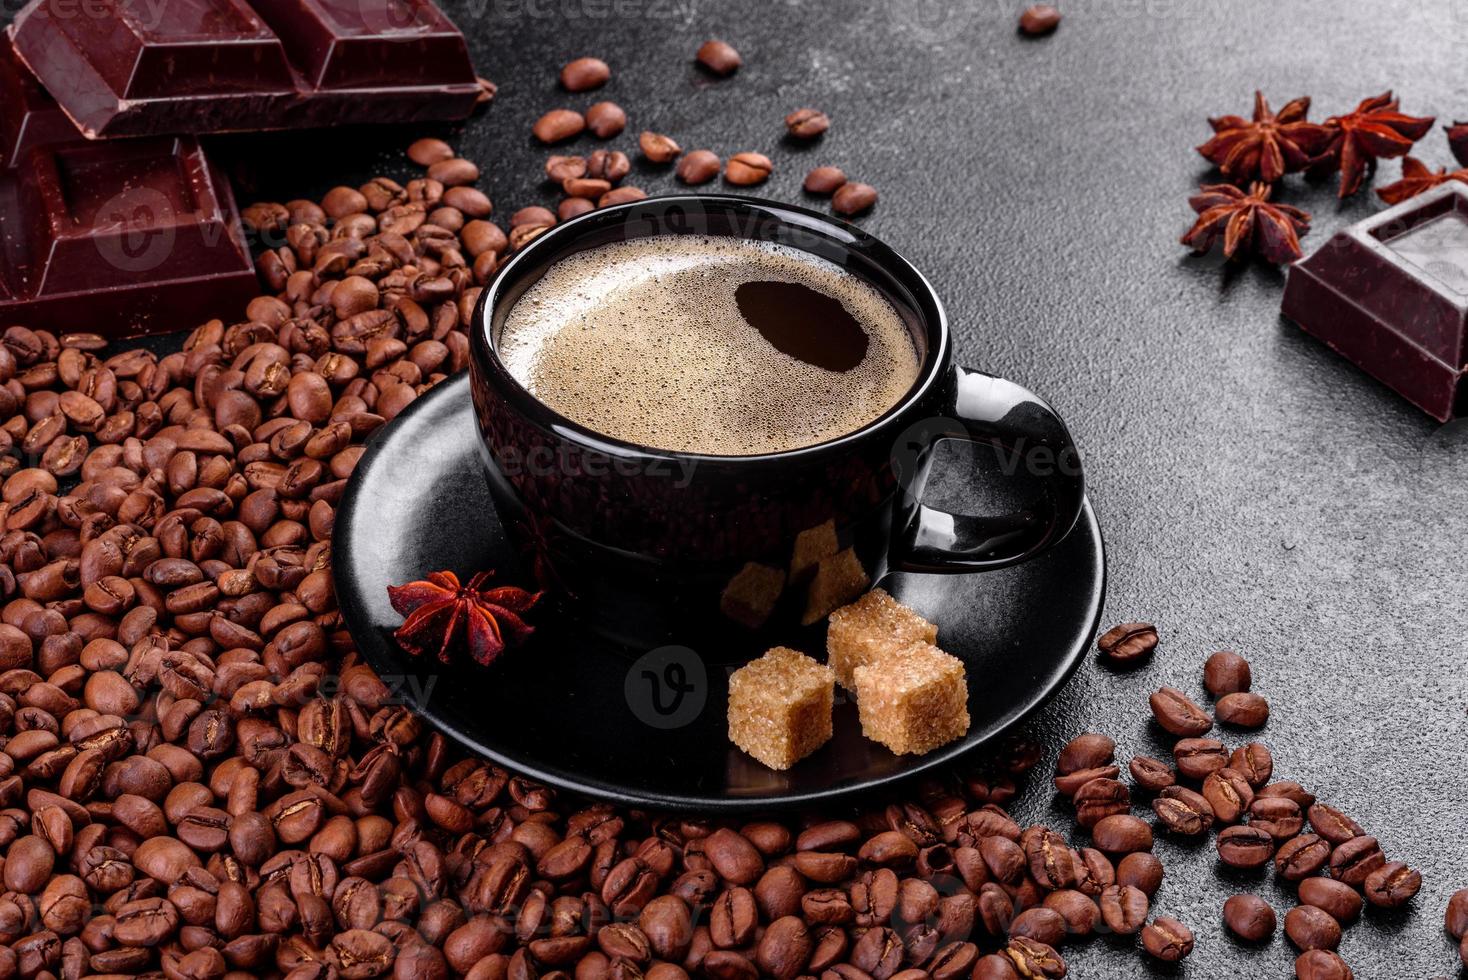 en kopp färskt doftande morgonkaffe för en glad start på dagen foto